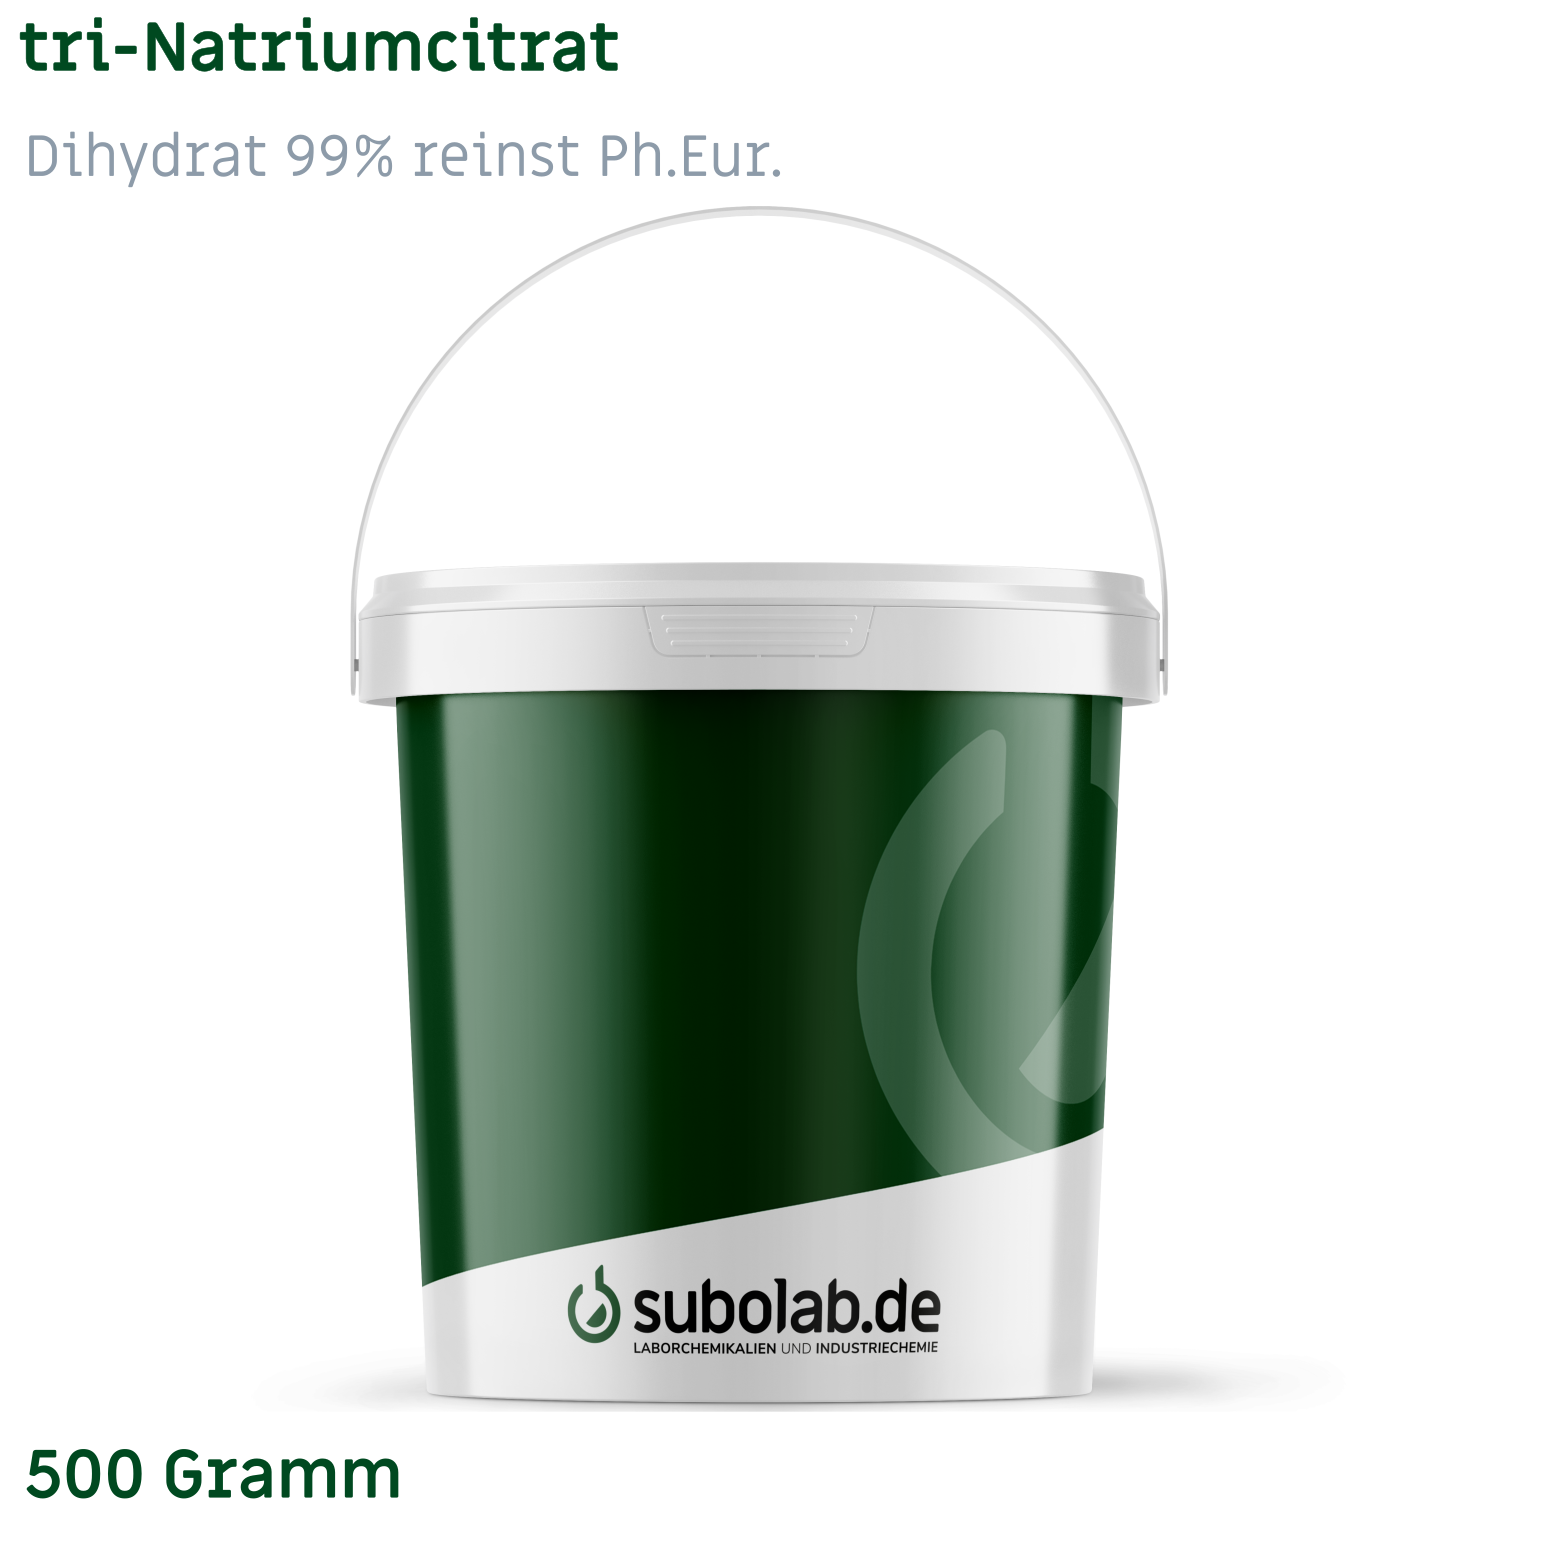 Bild von tri-Natriumcitrat - Dihydrat 99% reinst Ph.Eur. (500 Gramm)